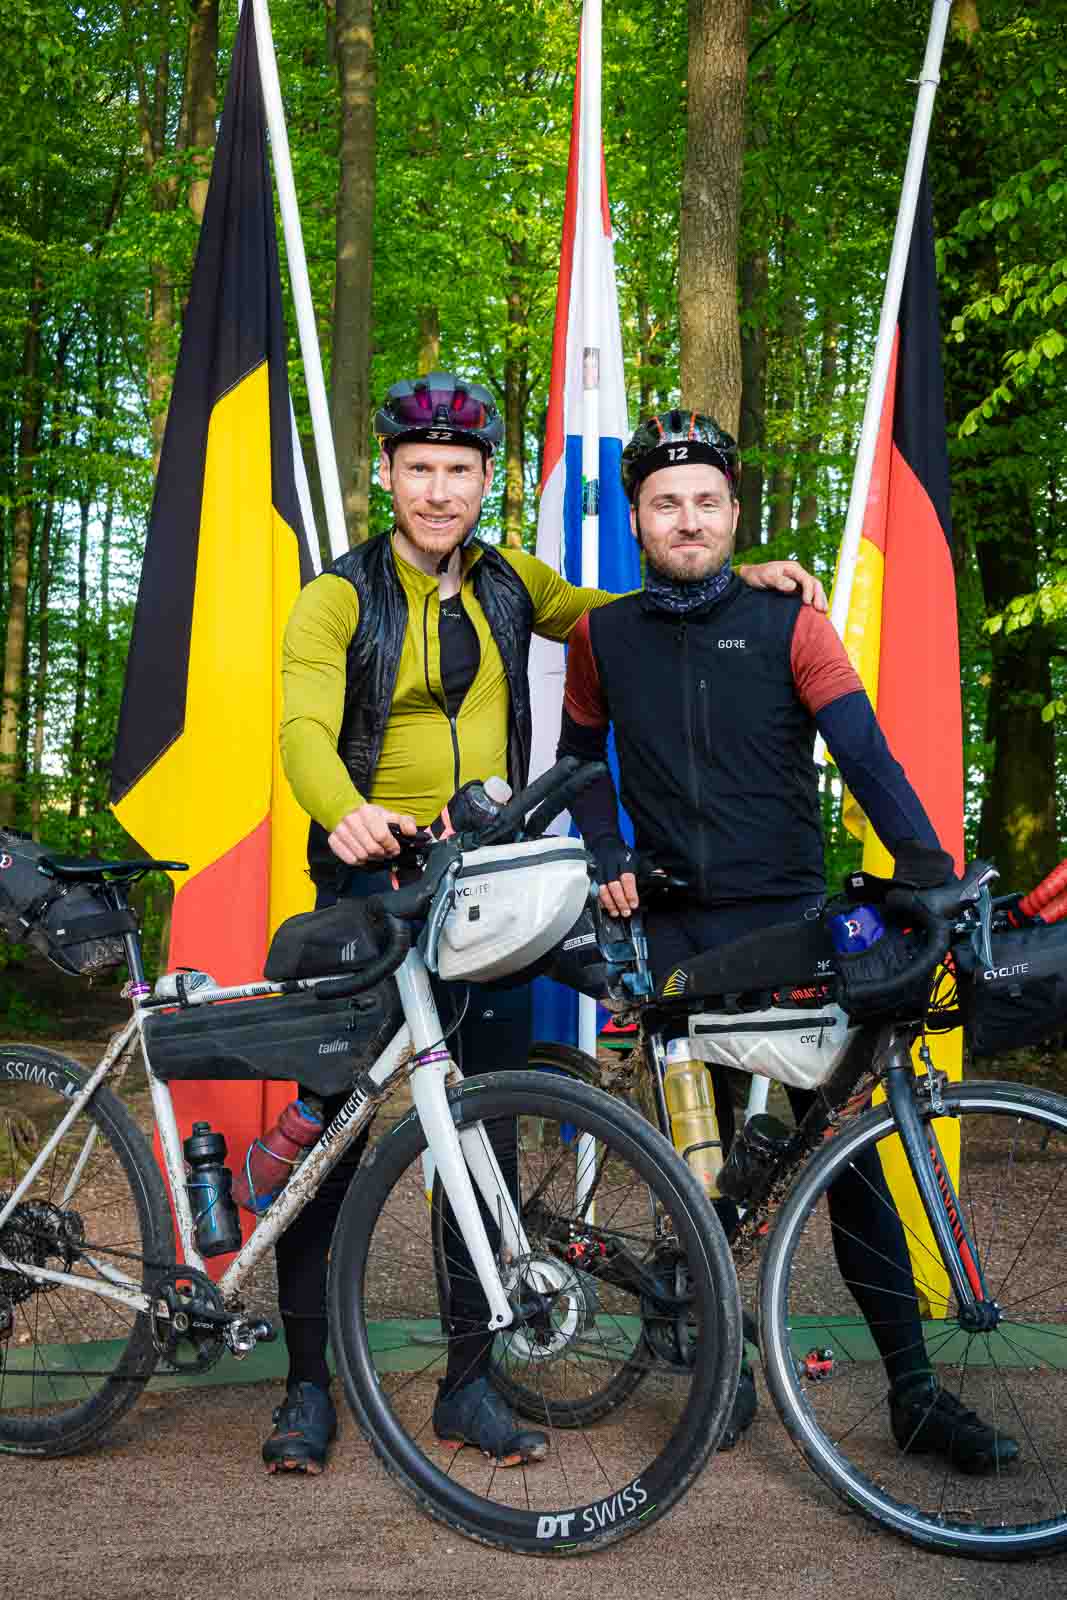 Am Dreiländereck von Deutschland, Belgien und den Niederlanden stehen zwei Radfahrer und lachen in die Kamera.